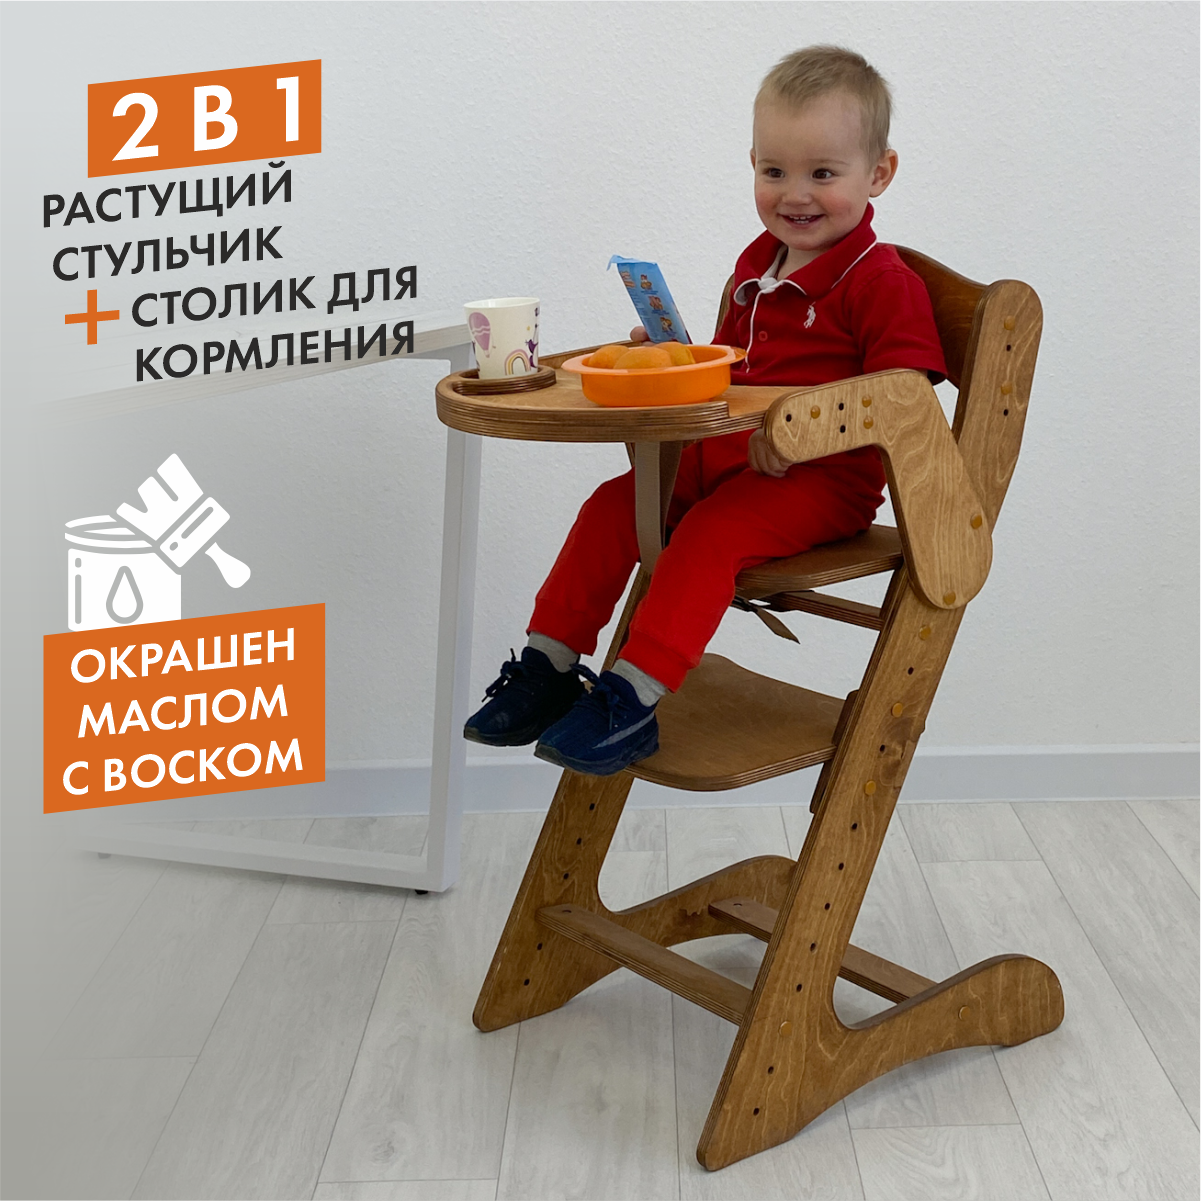 Детский стул своими руками